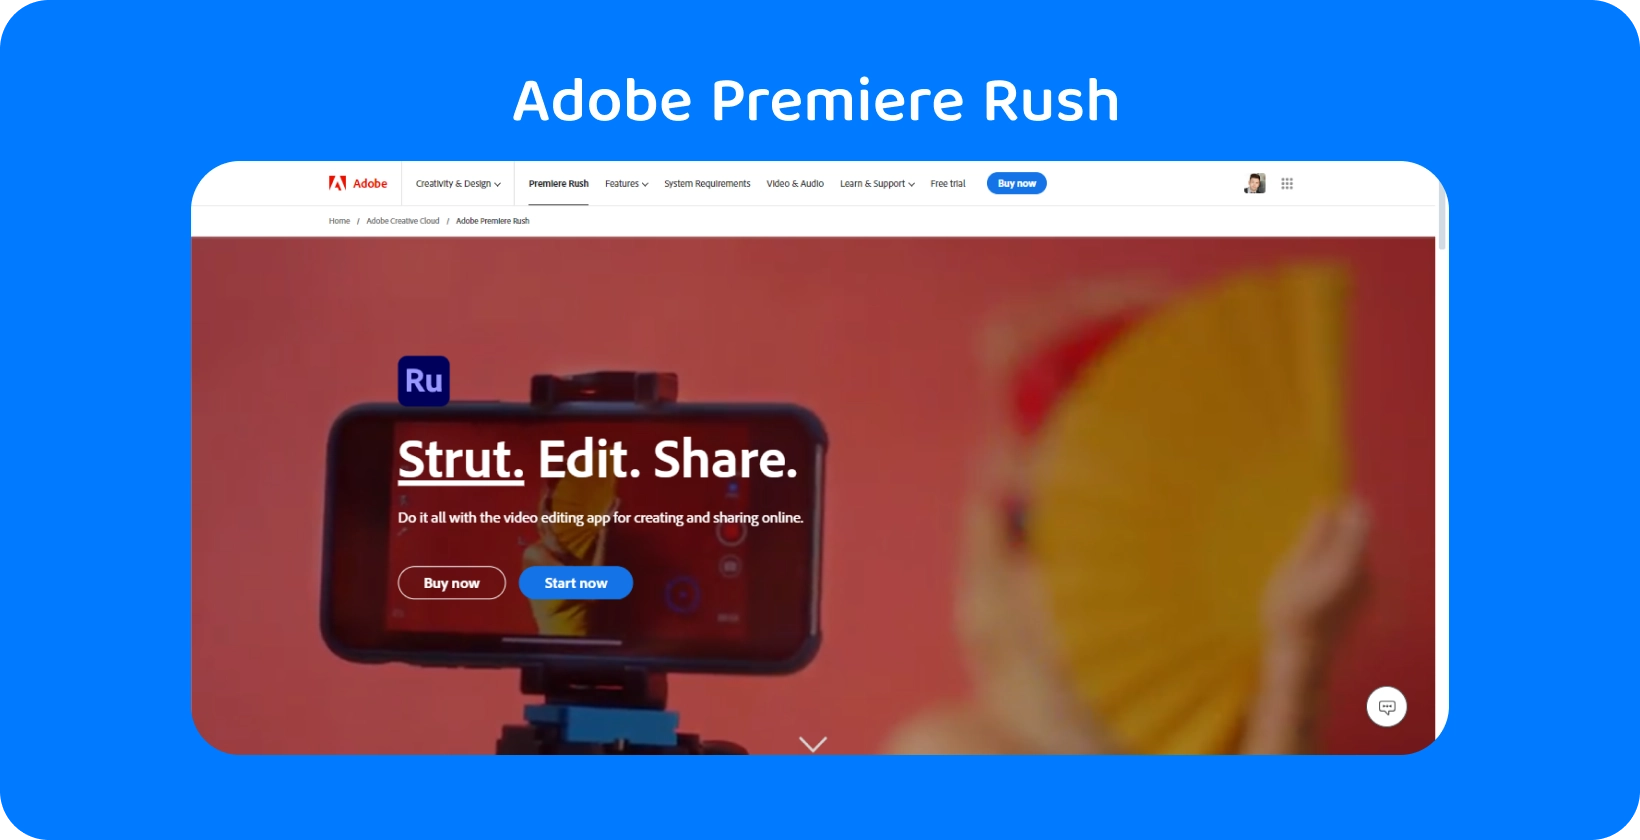 Adobe Premiere Rush pe un smartphone montat pe un trepied cu sloganul "Strut. Edit. Share." pentru editare video.